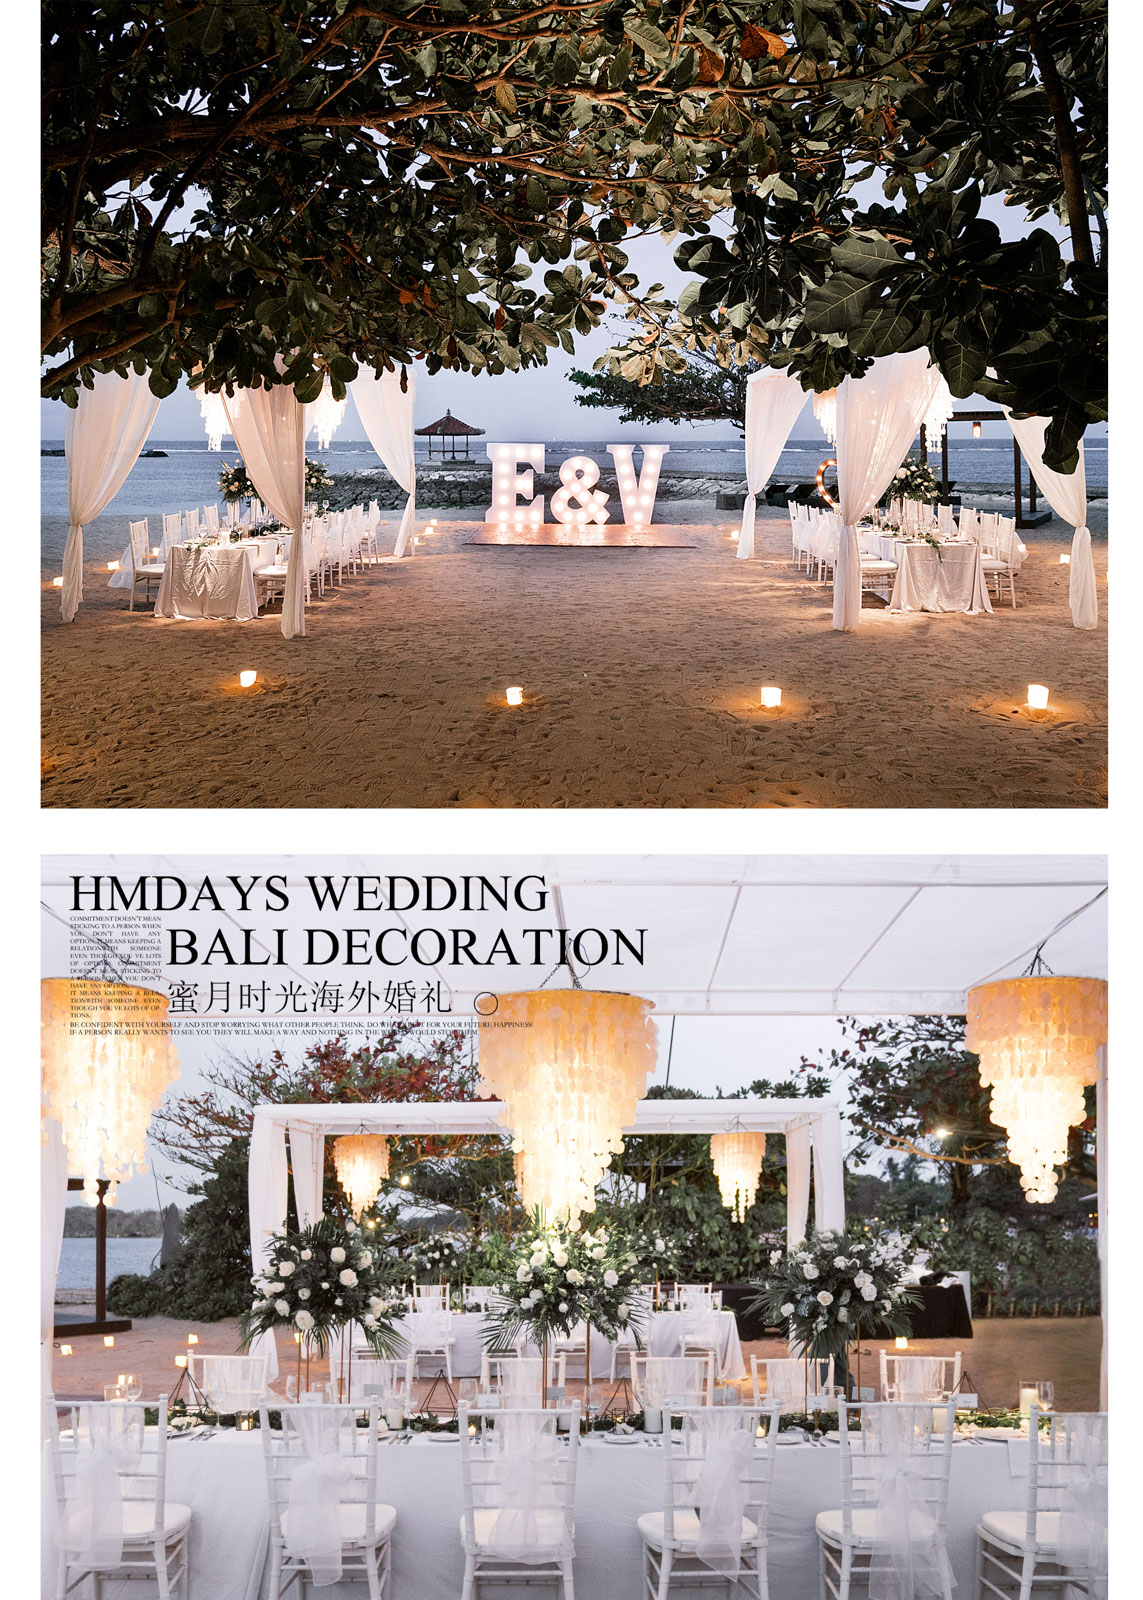 巴厘岛婚礼晚宴布置定制|海外婚礼定制中高端布置案例|巴厘岛婚礼布置定制案例